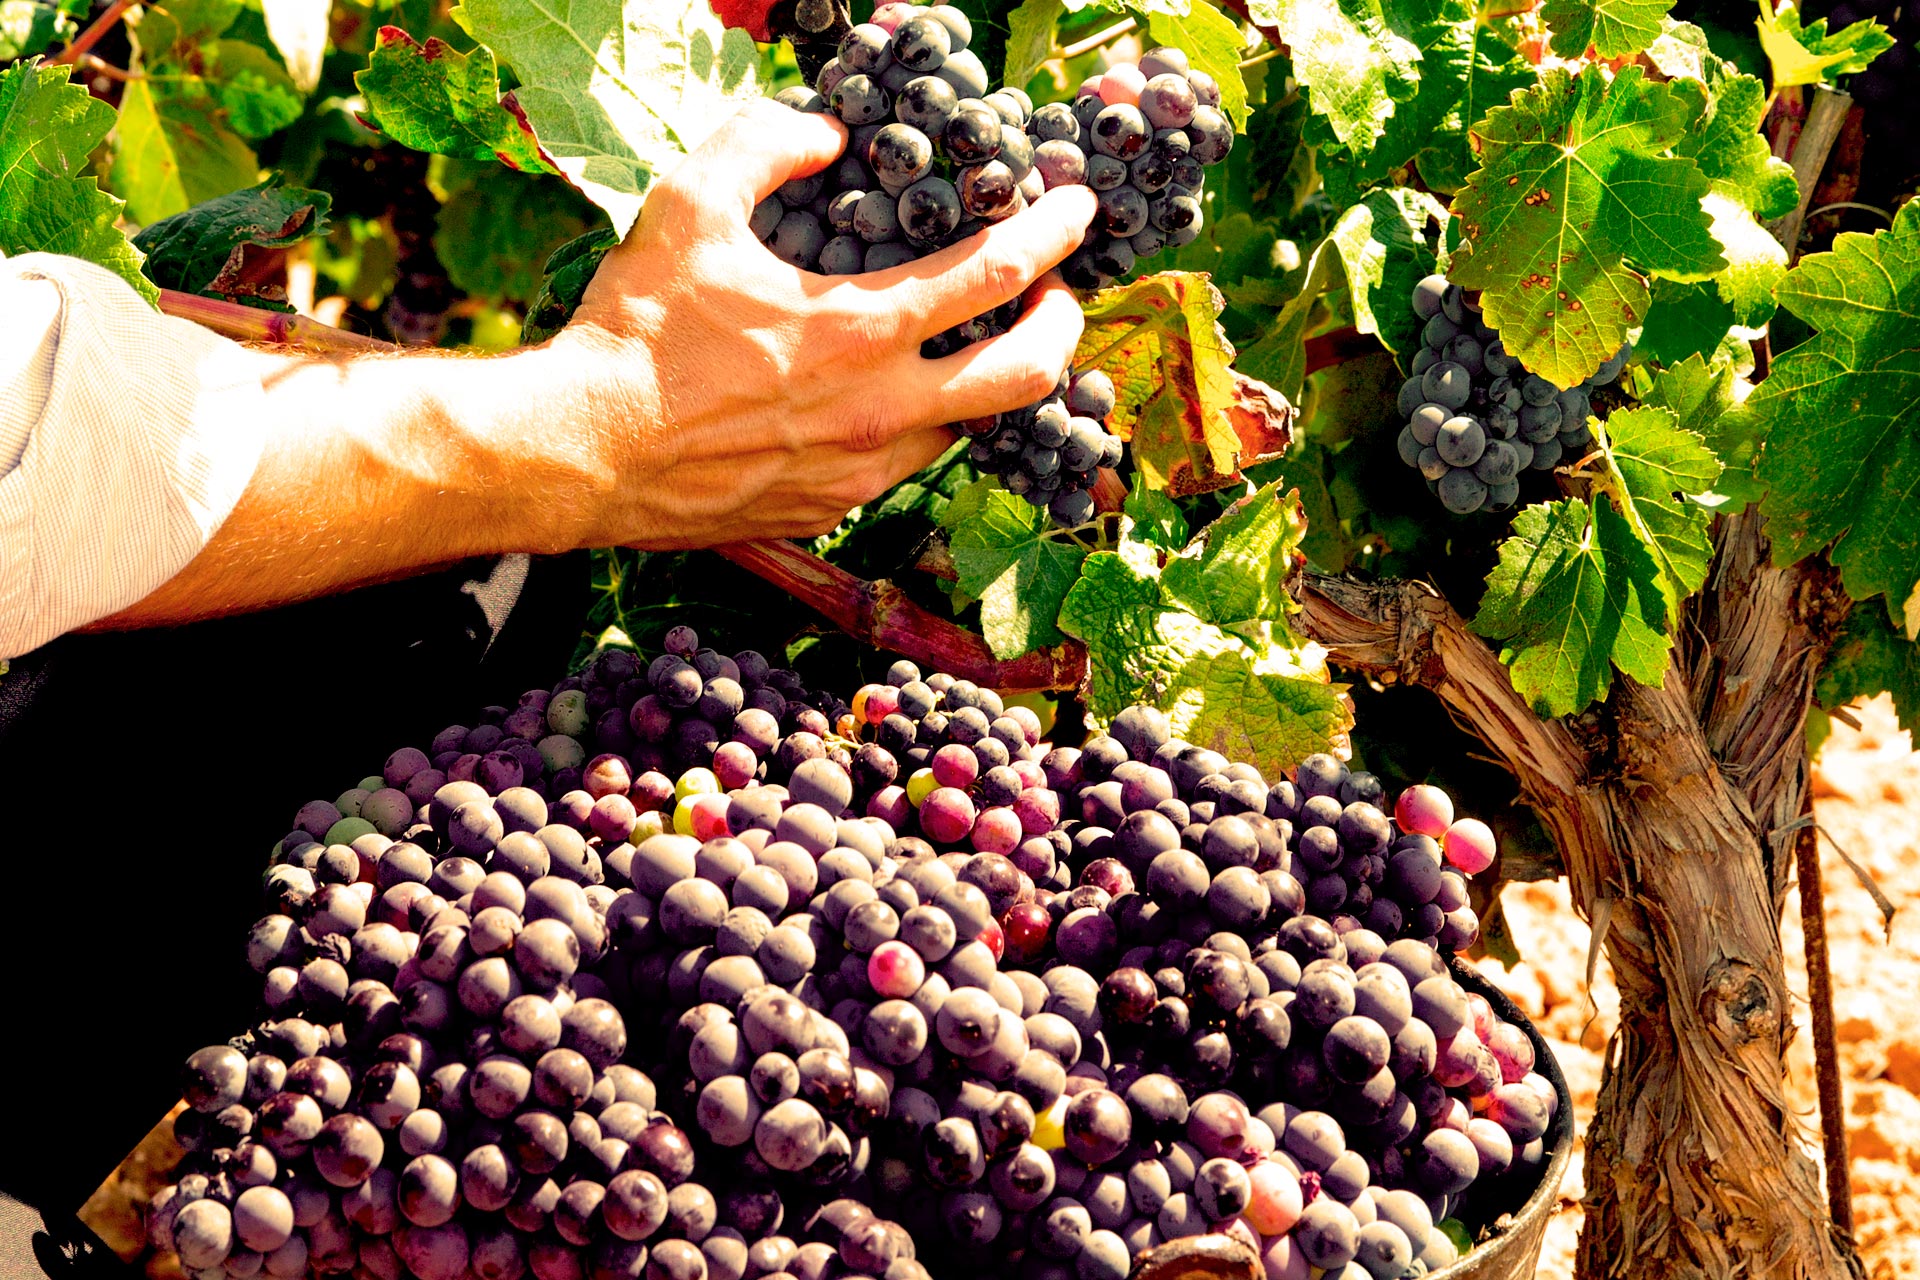 Ci impegniamo a produrre vini che arricchiscano il gusto e l'anima.